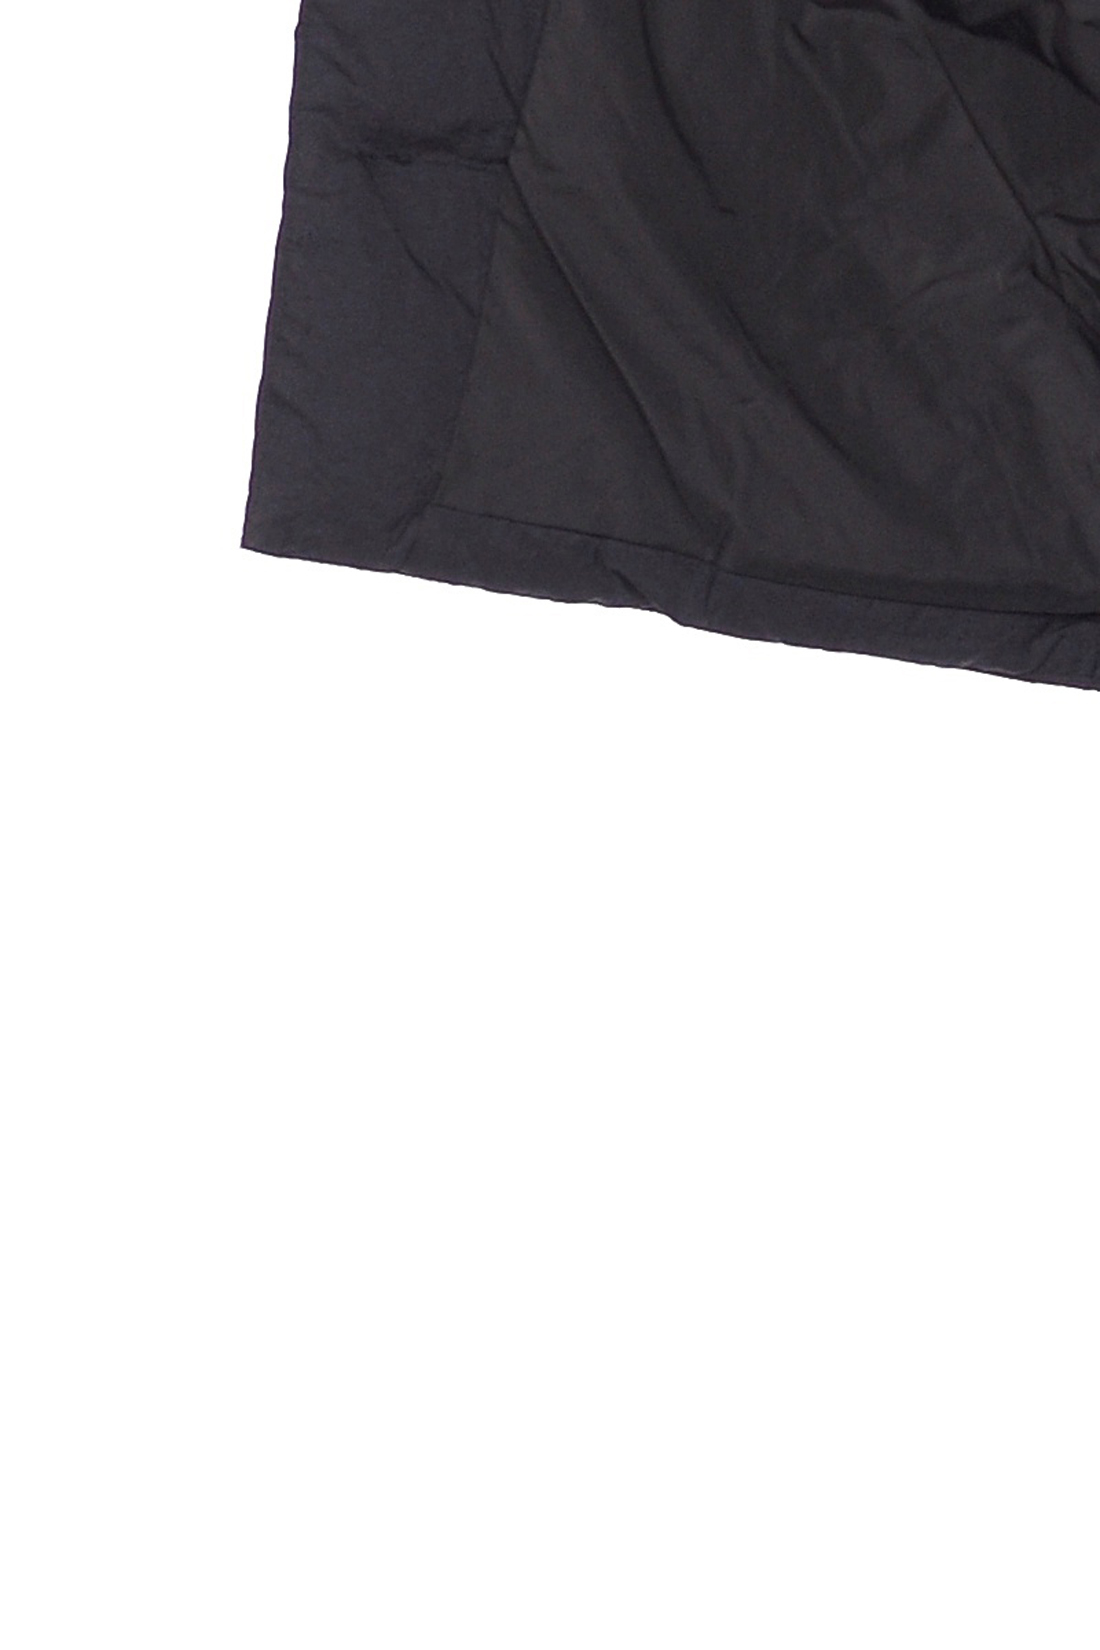 Чёрный пуховик-кокон (арт. baon B008595), размер XXL, цвет черный Чёрный пуховик-кокон (арт. baon B008595) - фото 3